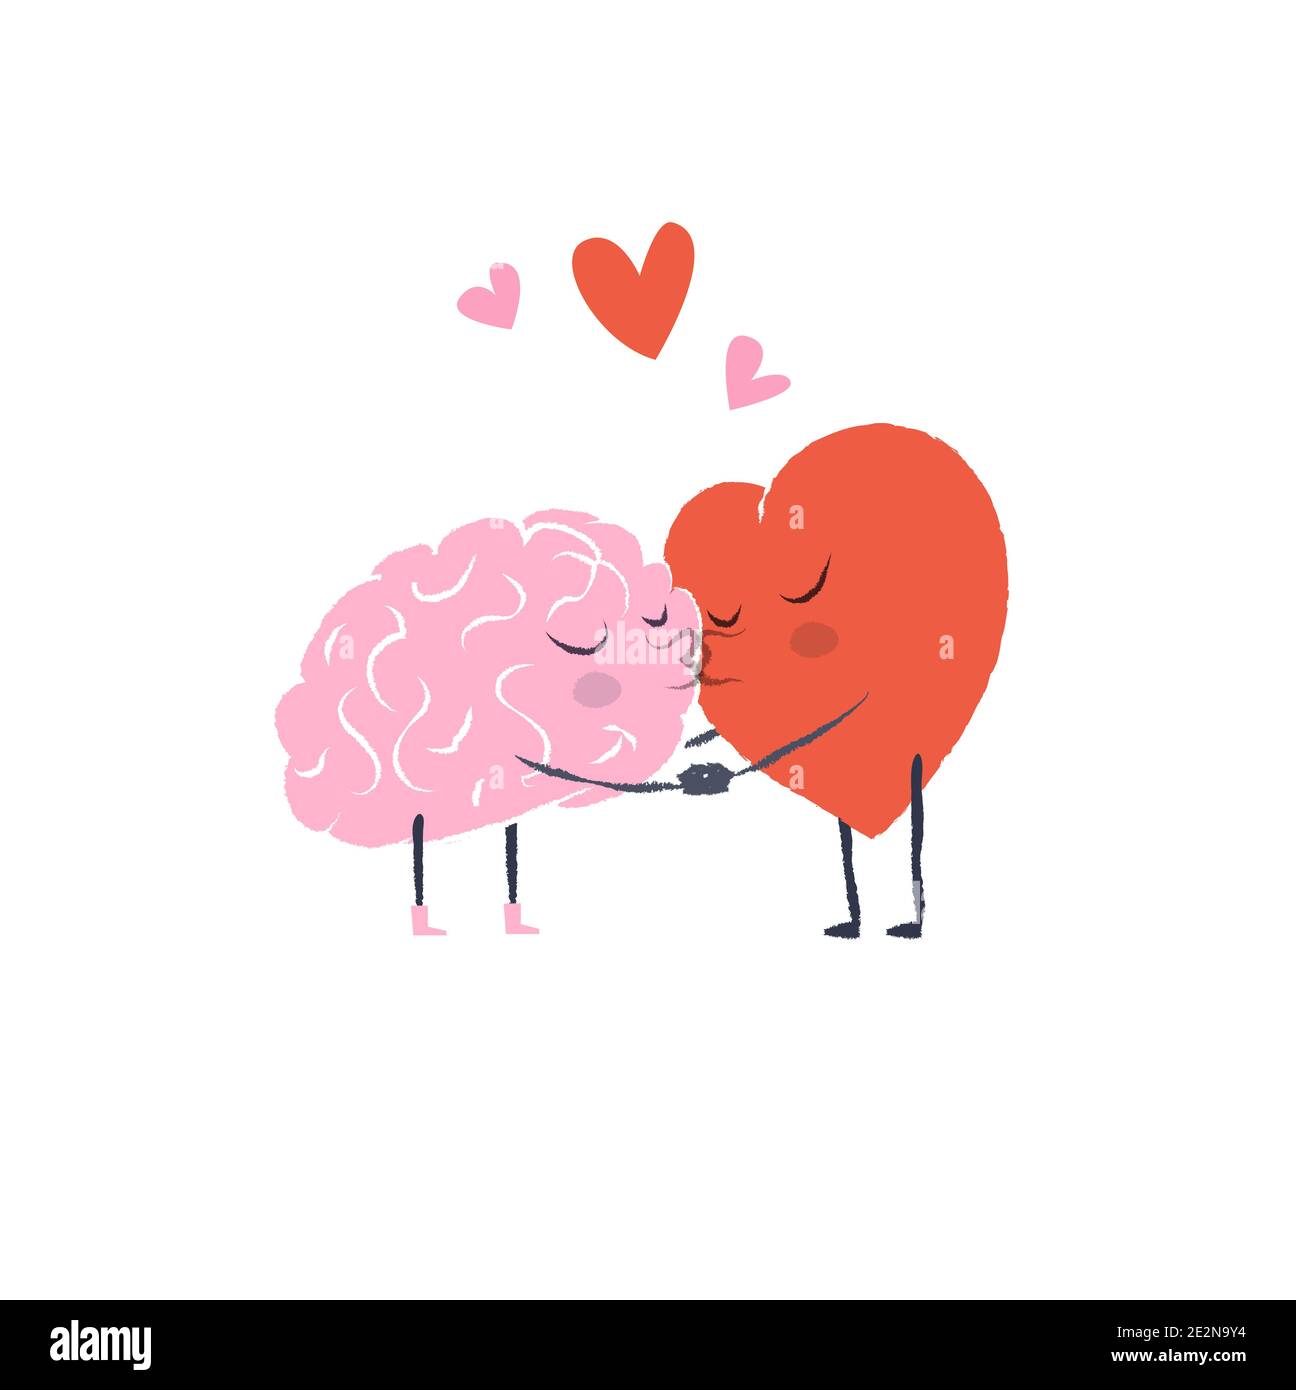 Ilustración de dibujos animados del corazón y el cerebro. El corazón y el  cerebro están enamorados. Mantén las manos y bese unos a otros. Feliz día  de San Valentín Imagen Vector de